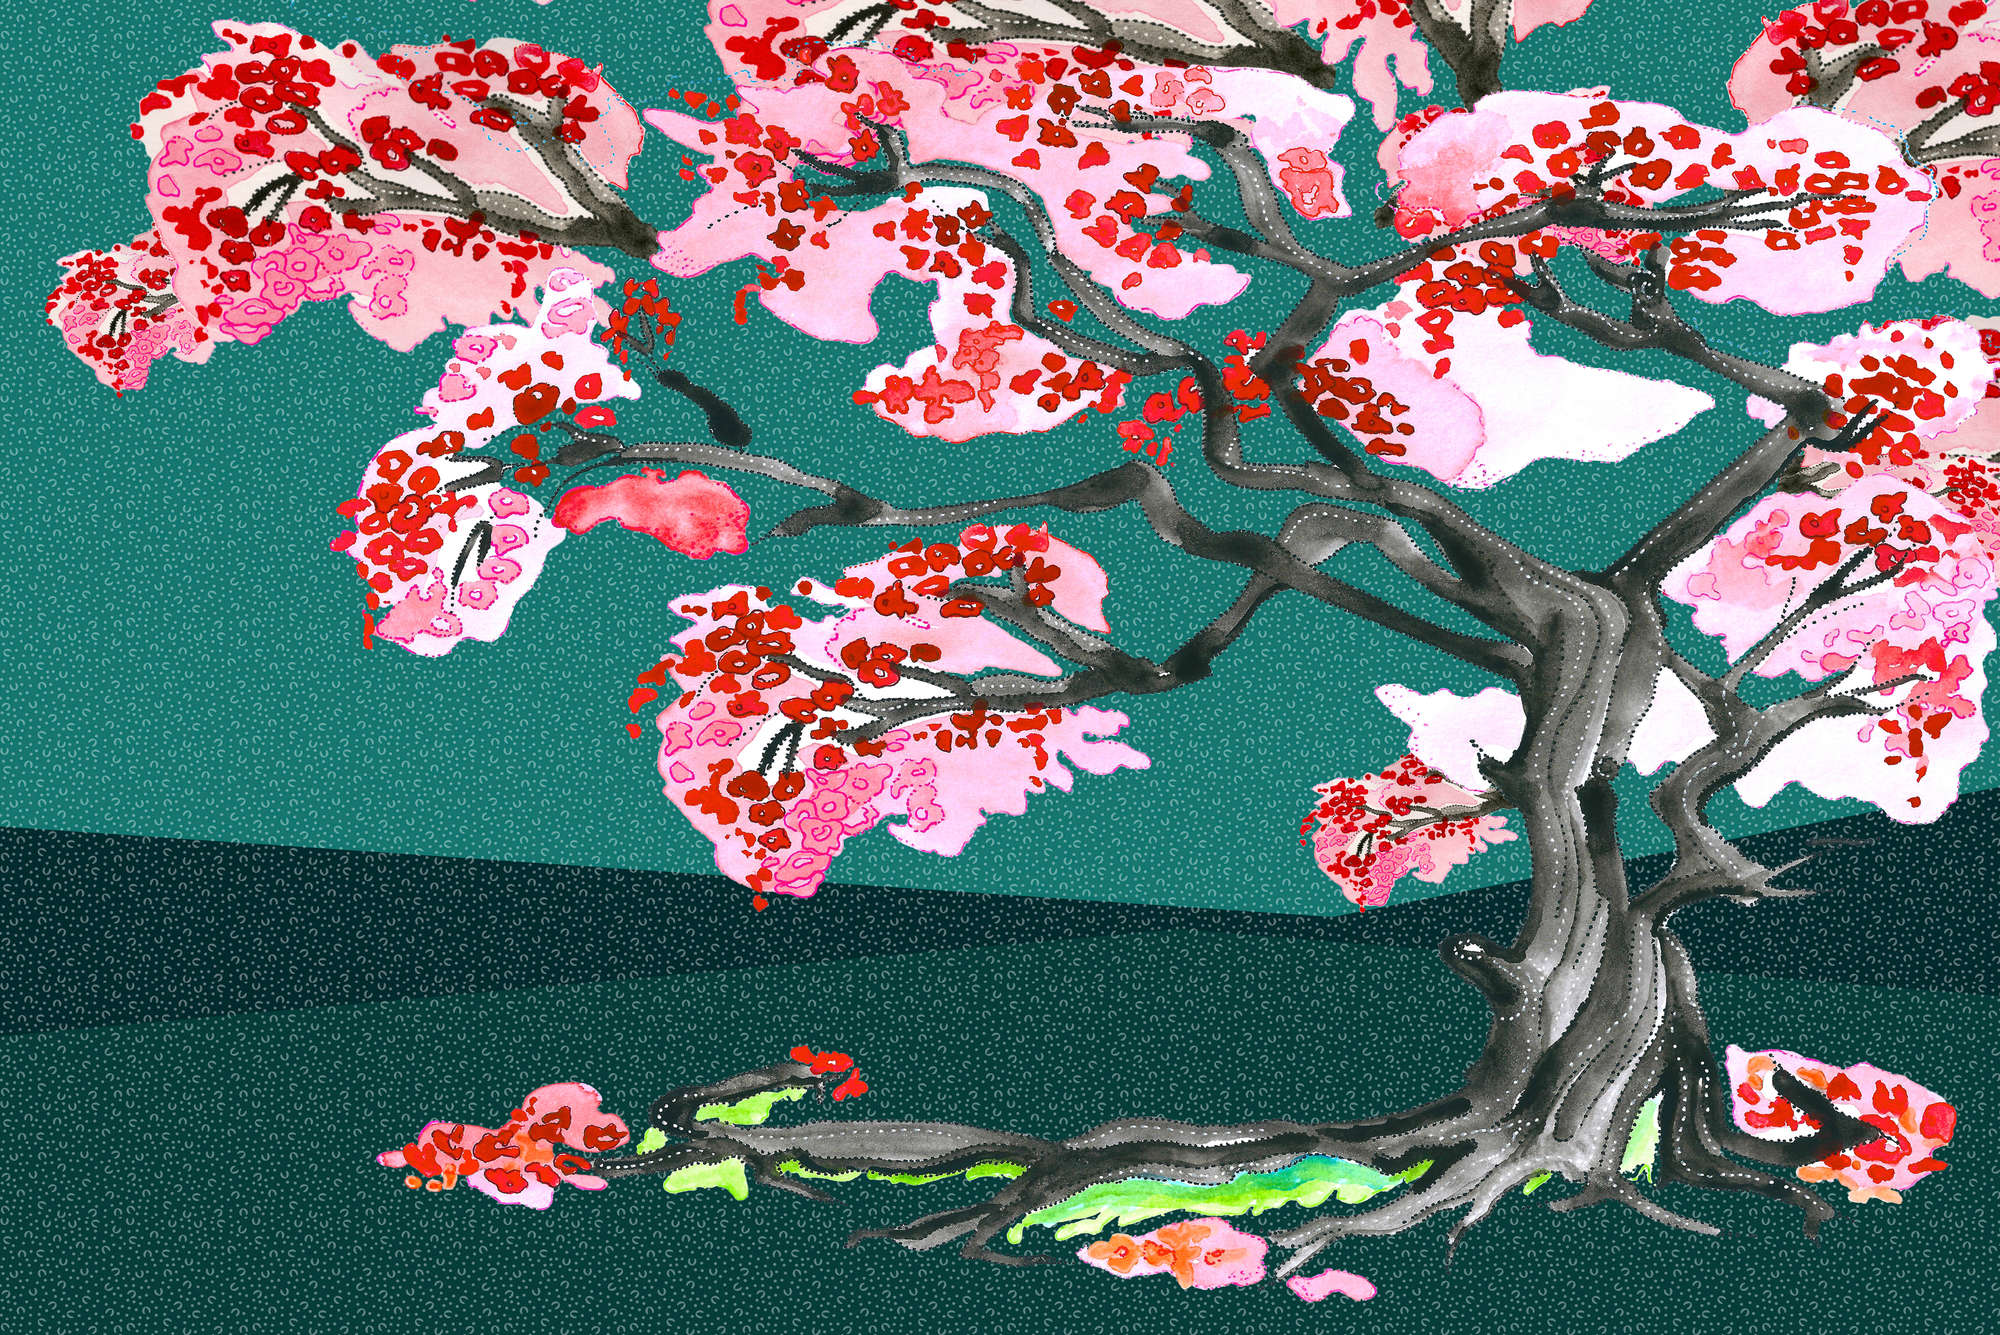             Mural de flores de cerezo en estilo de cómic asiático sobre tela no tejida lisa de primera calidad
        